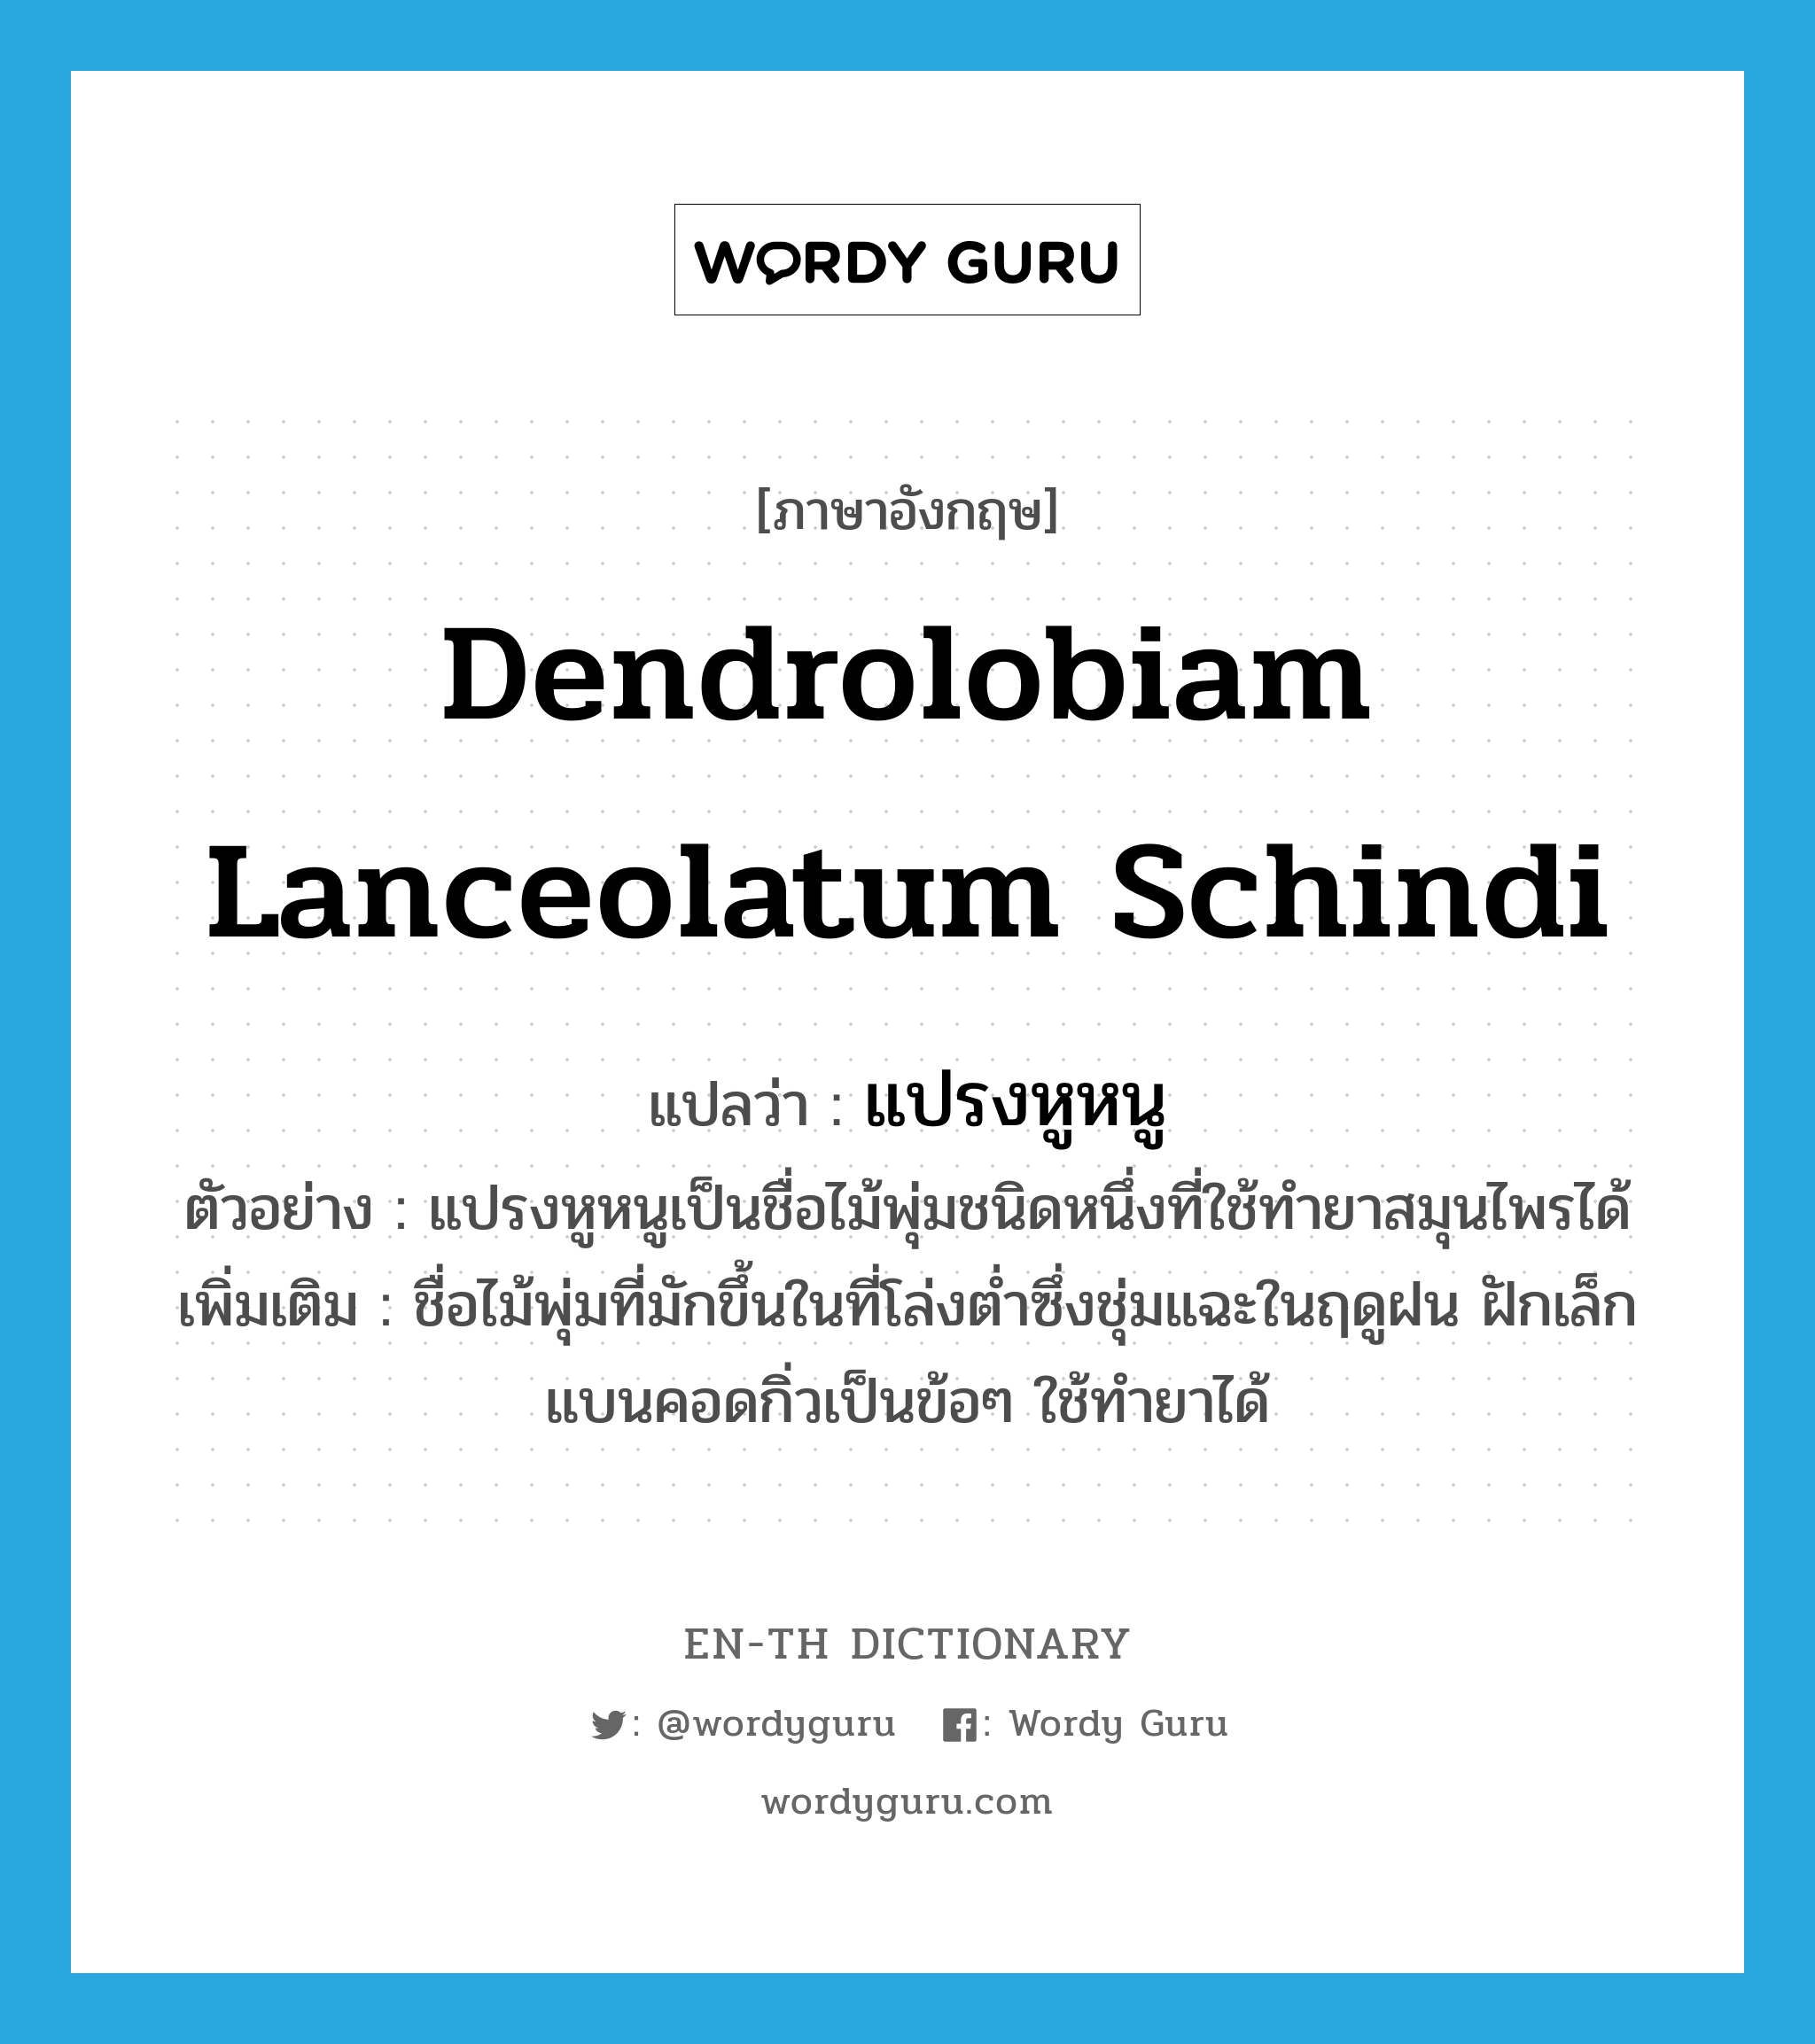 แปรงหูหนู ภาษาอังกฤษ?, คำศัพท์ภาษาอังกฤษ แปรงหูหนู แปลว่า Dendrolobiam lanceolatum Schindi ประเภท N ตัวอย่าง แปรงหูหนูเป็นชื่อไม้พุ่มชนิดหนึ่งที่ใช้ทำยาสมุนไพรได้ เพิ่มเติม ชื่อไม้พุ่มที่มักขึ้นในที่โล่งต่ำซึ่งชุ่มแฉะในฤดูฝน ฝักเล็กแบนคอดกิ่วเป็นข้อๆ ใช้ทำยาได้ หมวด N